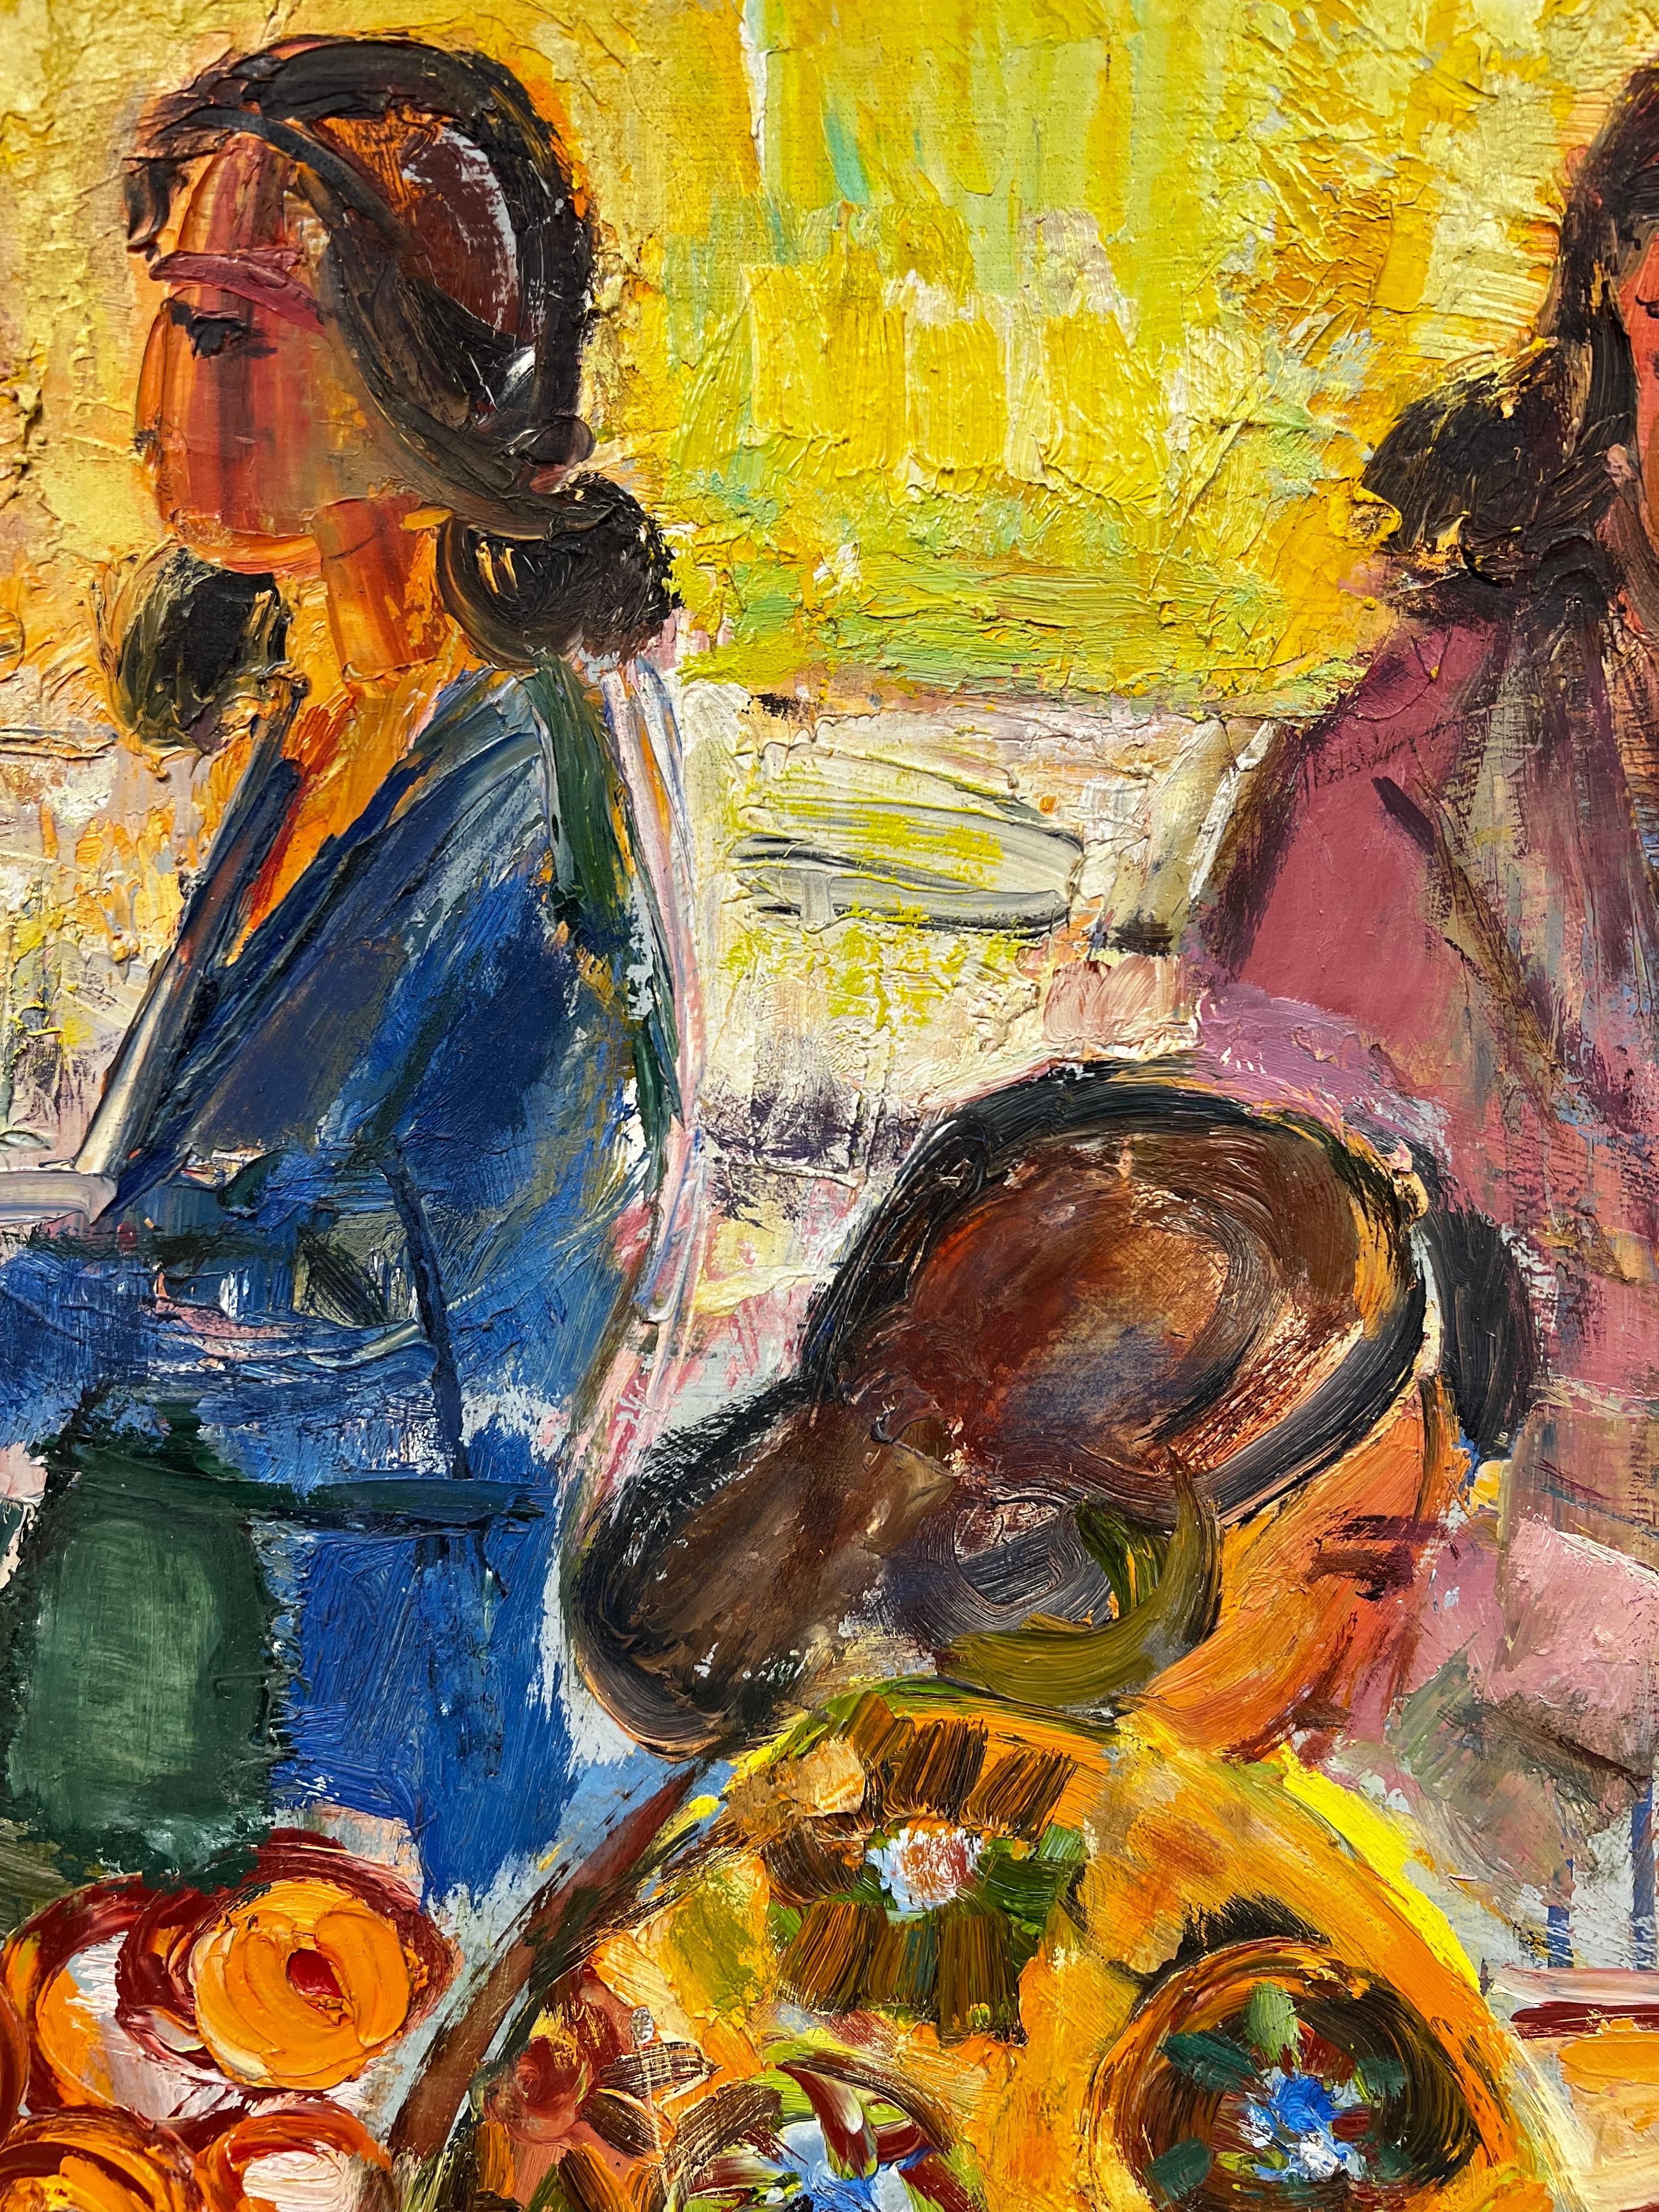 L'étal du marché
par Édouard Righetti (1924-2001)

signé
inscrit au verso
peinture à l'huile sur toile, magnifiquement peinte avec des empâtements épais à l'huile et des couleurs vives à base de jaune. 
très bonne condition
dans son cadre en bois